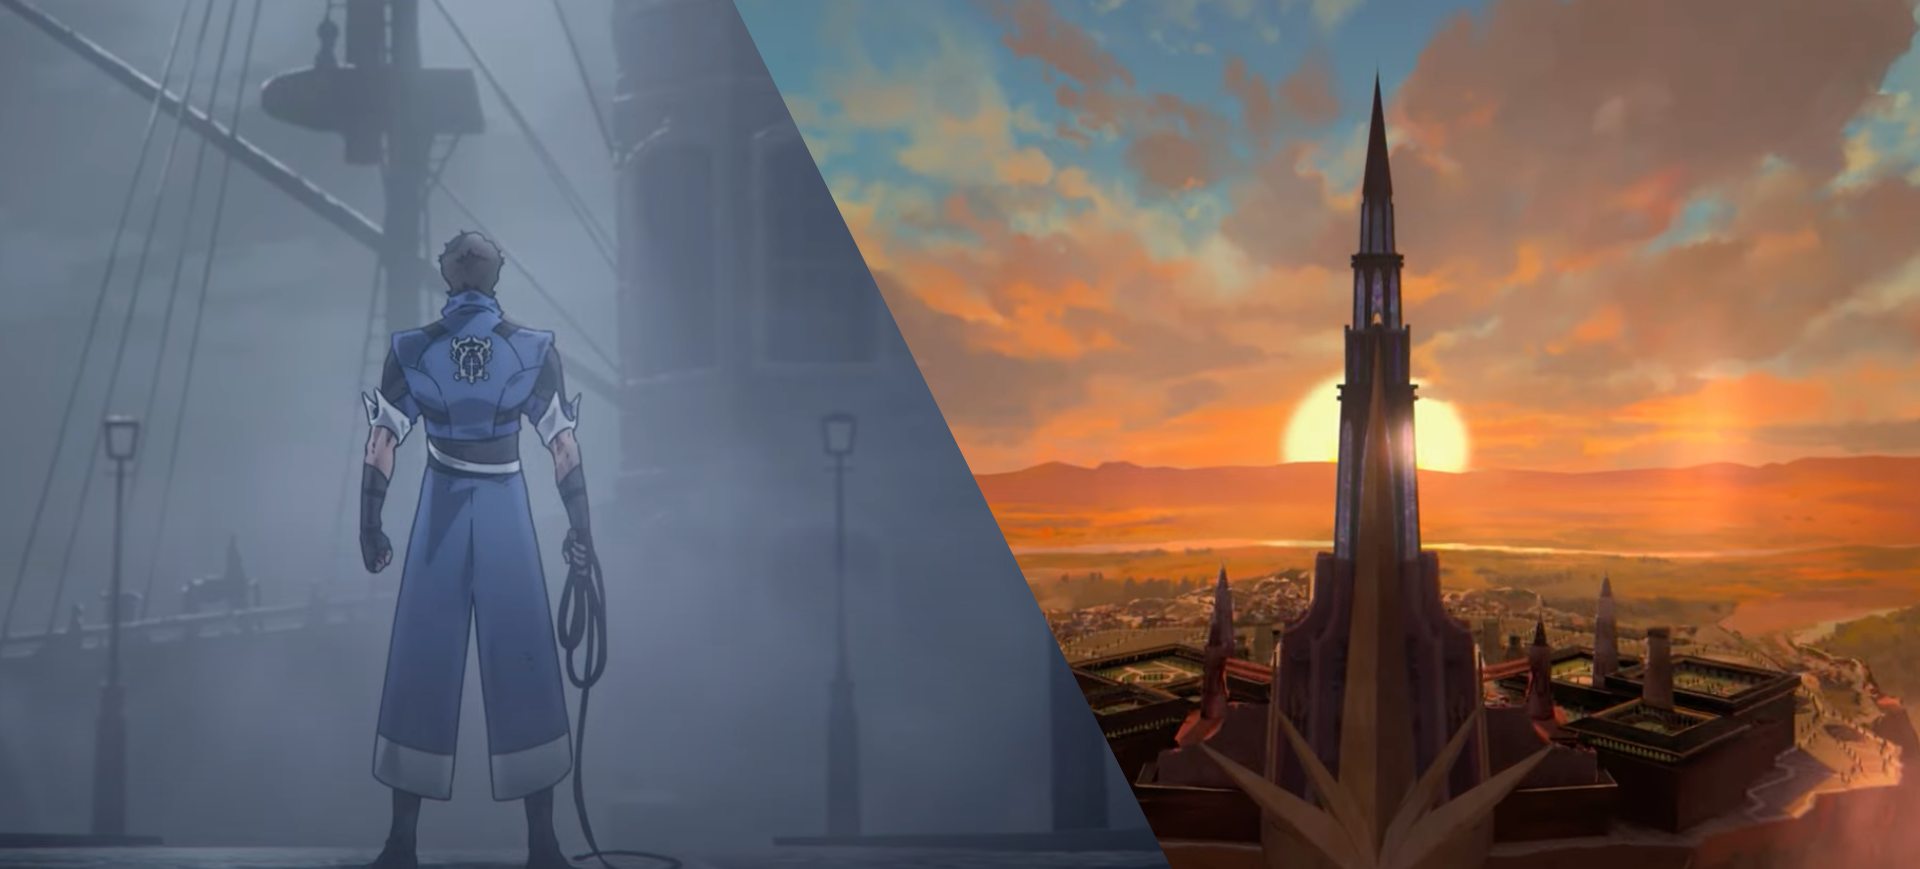 Captura de tela para as novas séries animadas da Netflix baseadas em games: à esquerda aparece um personagem de Castlevania; à direita um pôr-do-sol em uma paisagem de Dragon Age